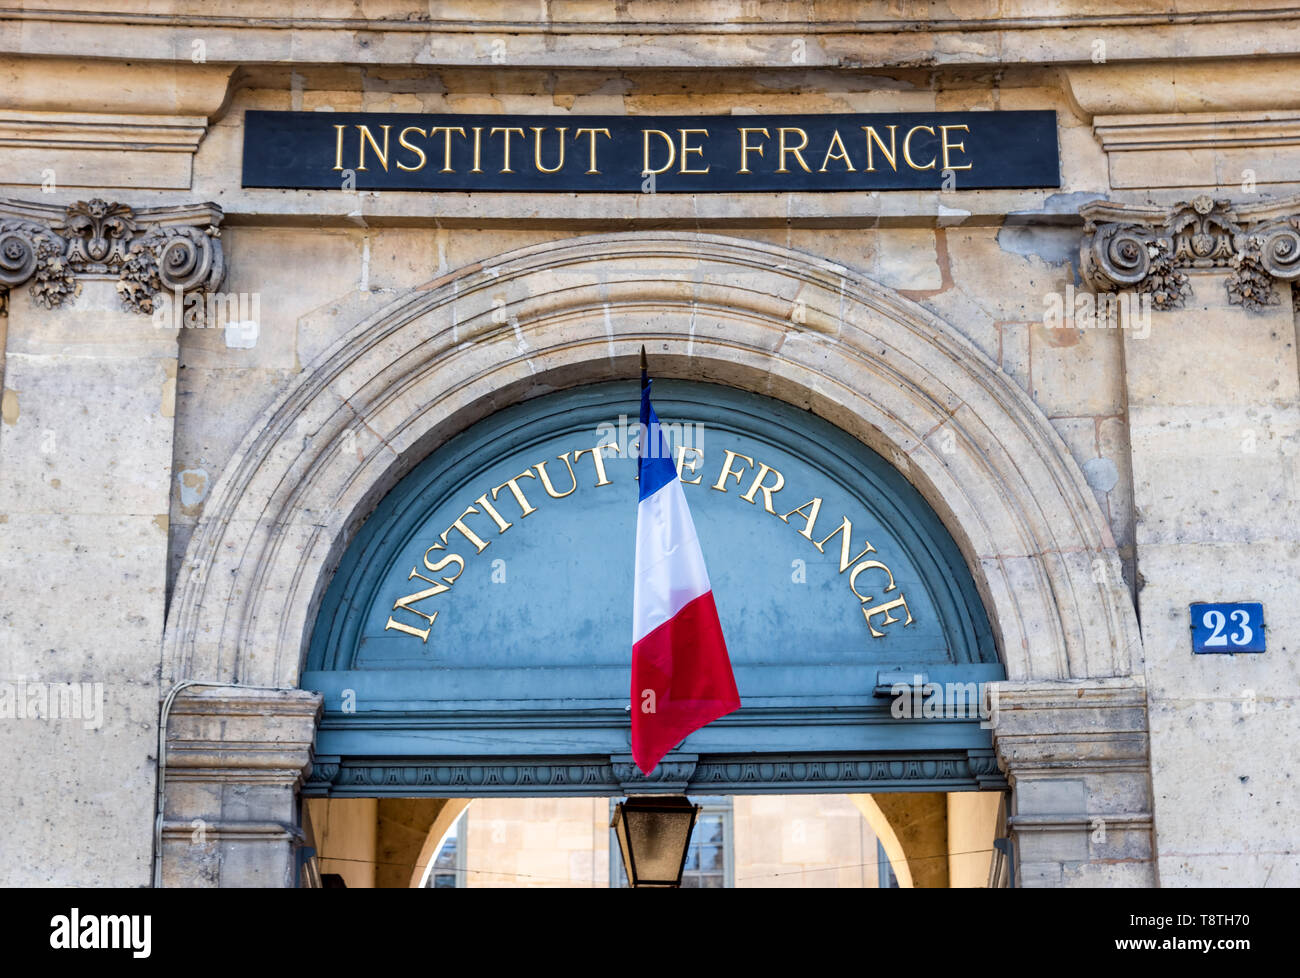 Institut de France Entrance - Paris, France Stock Photo